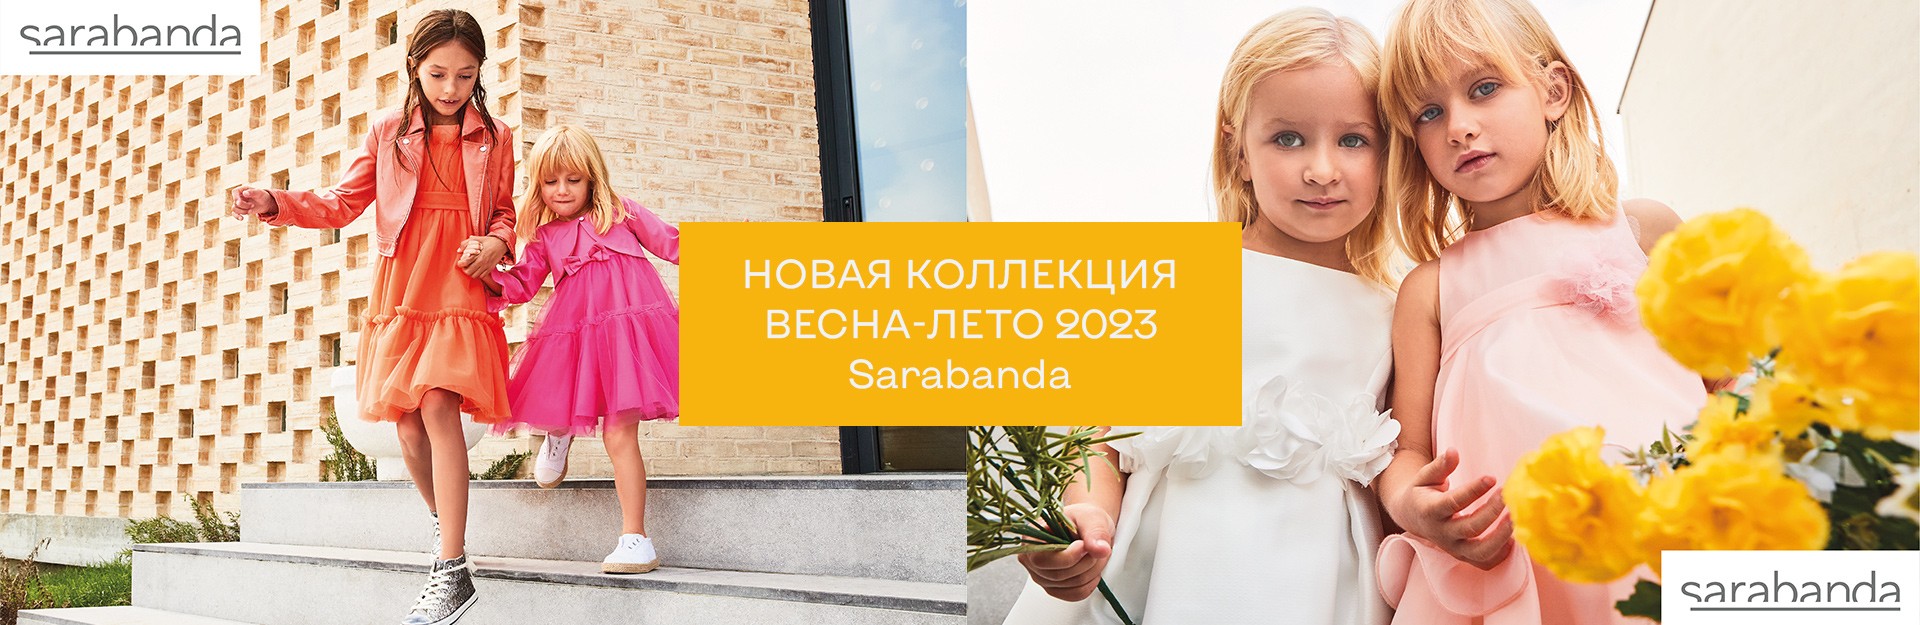 Новая коллекция Весна-лето 23 Sarabanda